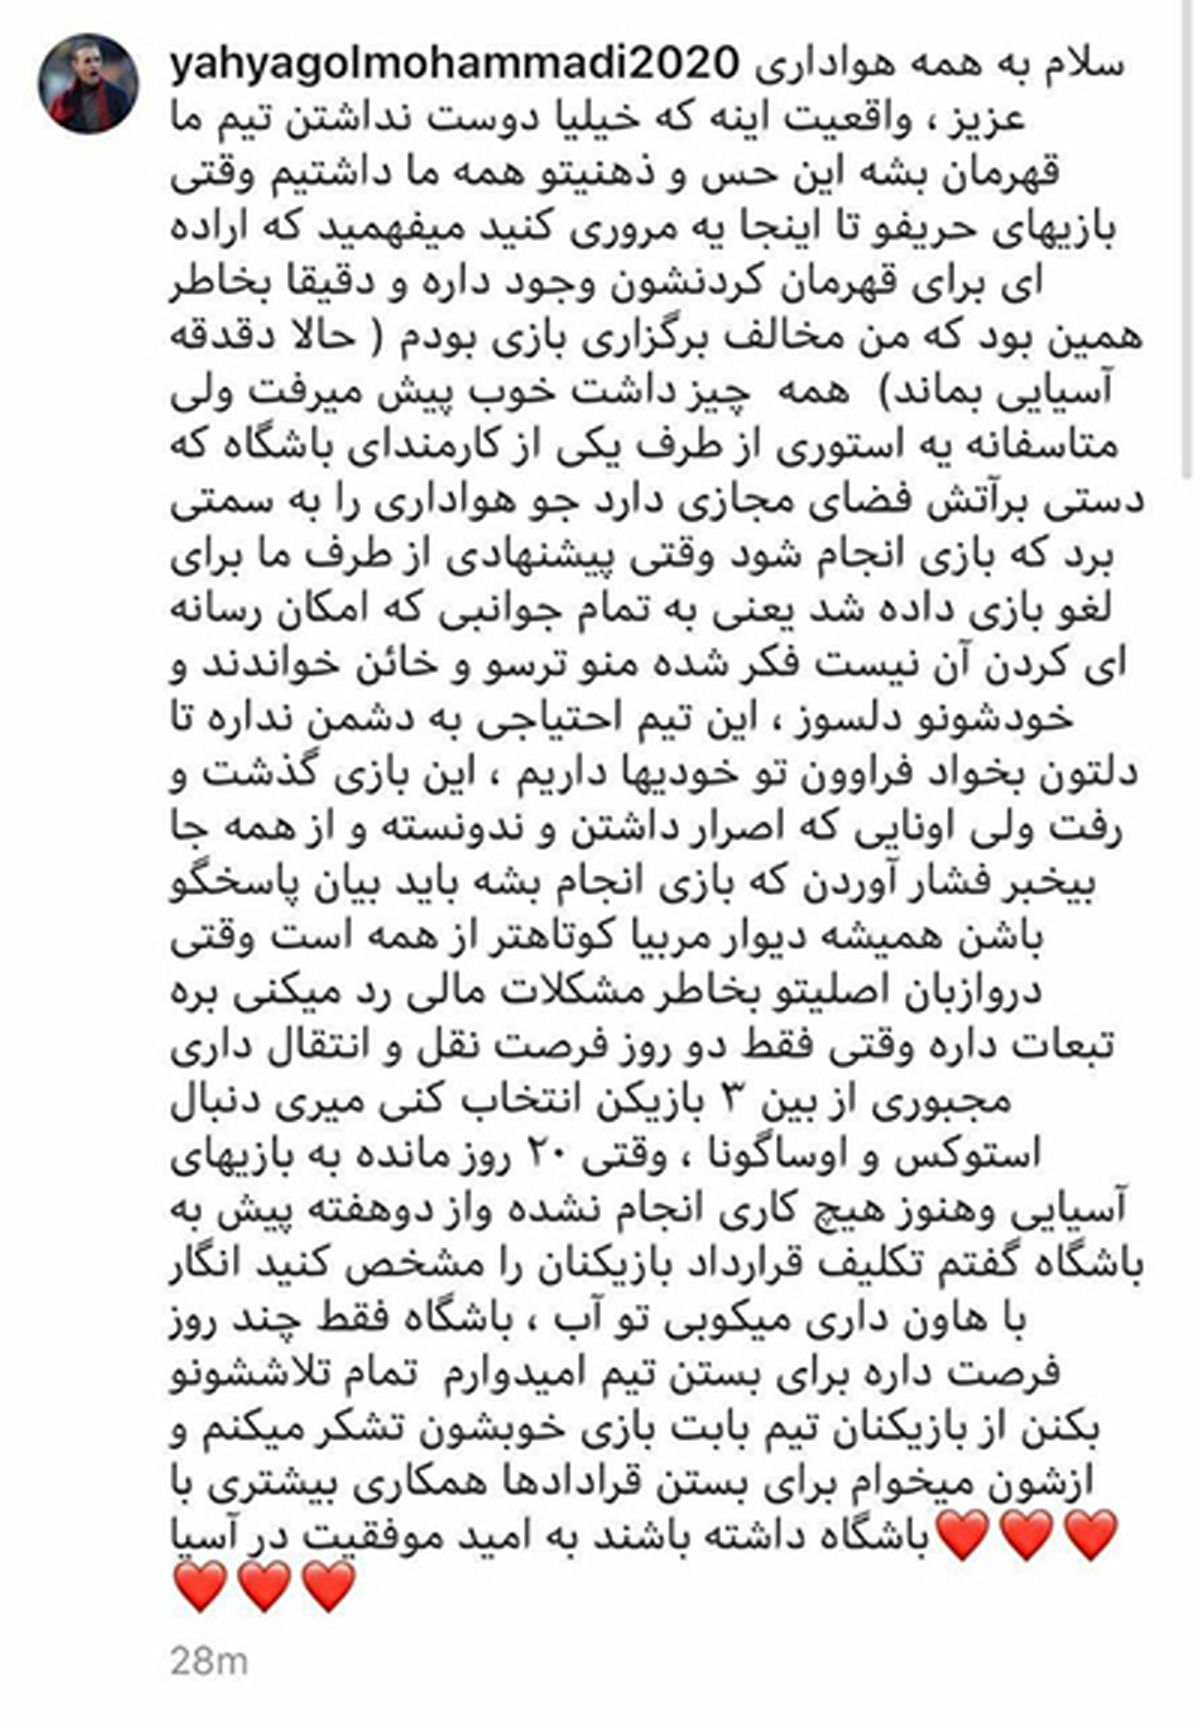 چرا یحیی گل محمدی پست اینستاگرامش را پاک کرد؟